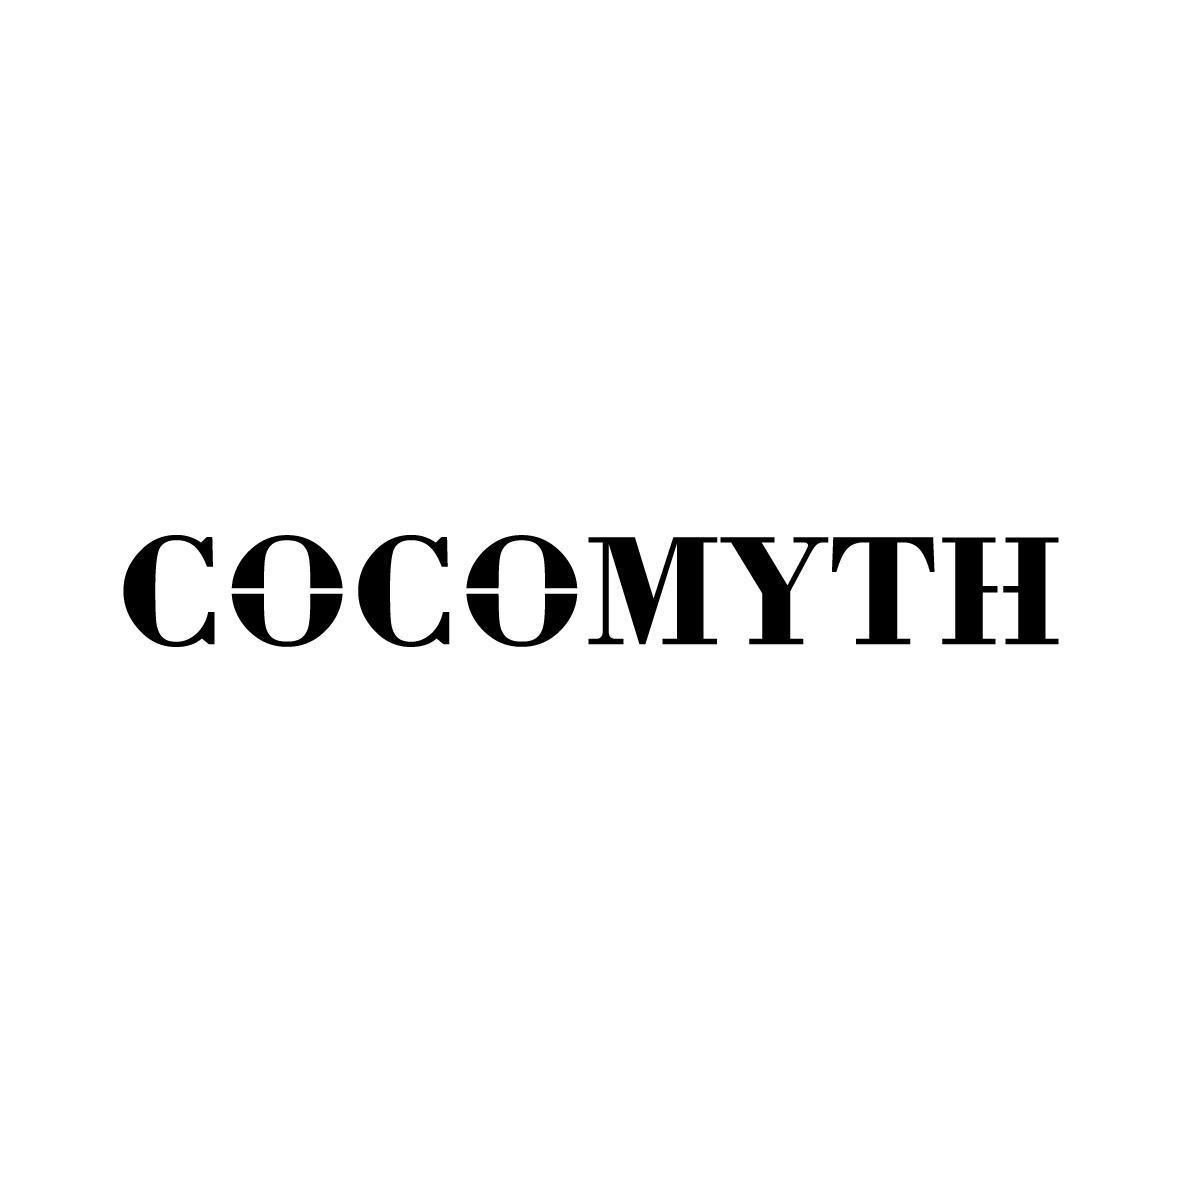 COCOMYTH